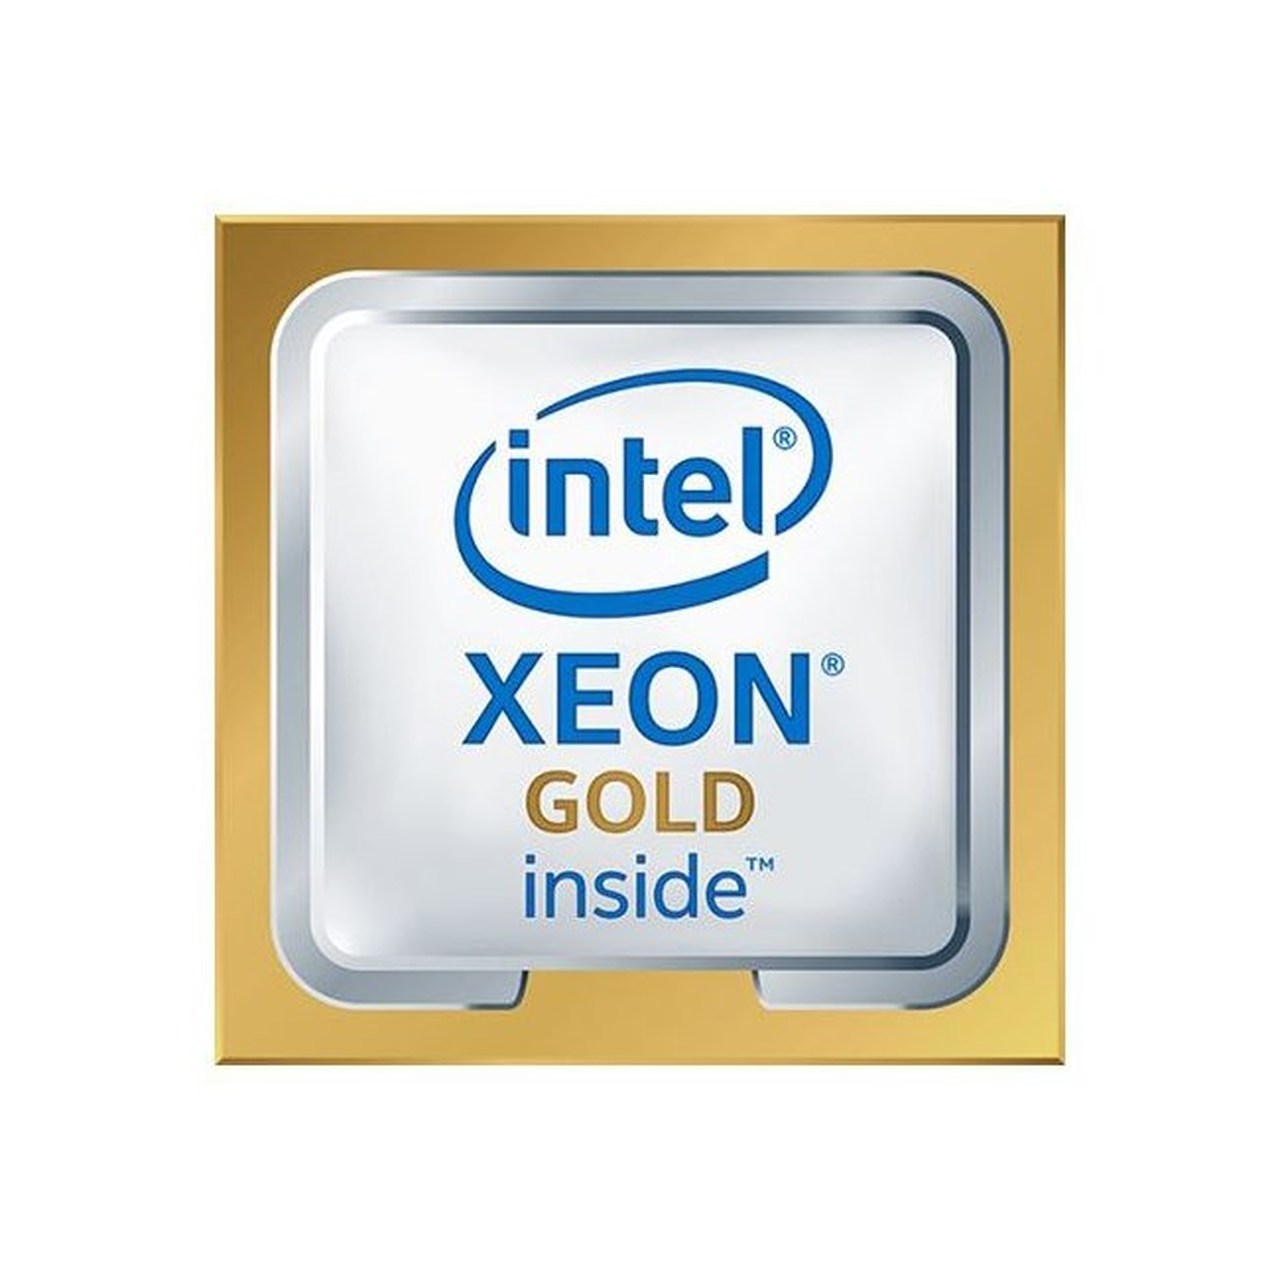 Процессор Intel Xeon Gold 5220 FC-LGA3647 ОЕМ (CD8069504214601SRFBJ) процессор cpu intel xeon gold 6230 2 1ghz 27 5mb 20cores fc lga3647 оем tdp 125w up to 1tb ddr4 2933 cd8069504193701srf8w 1 year